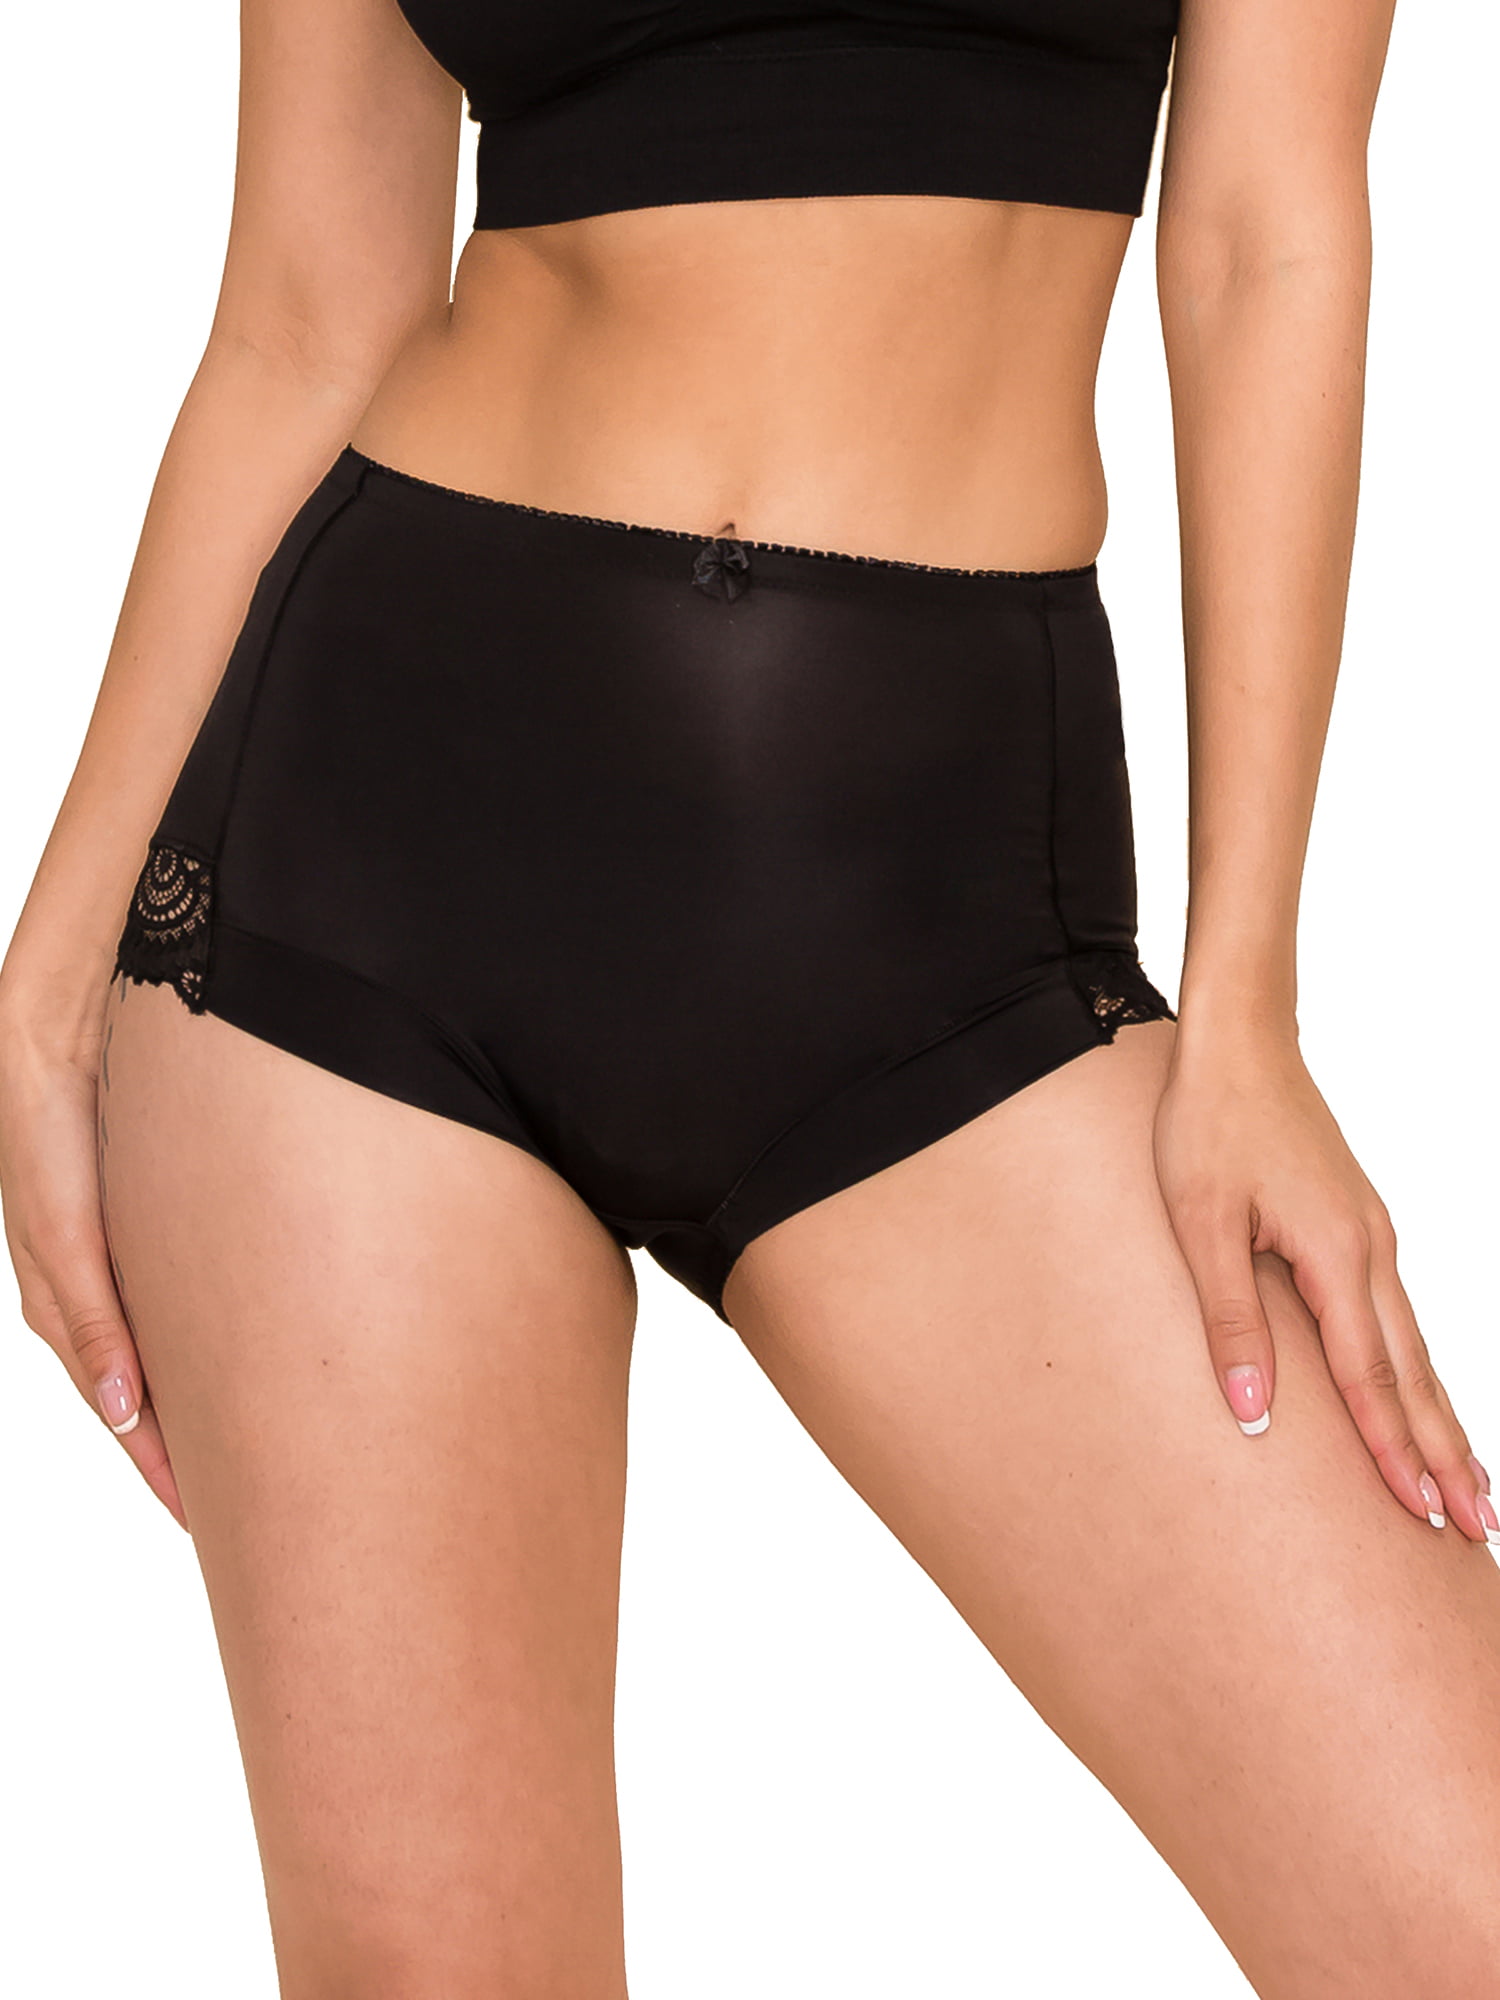 Assorted High Waist Broad elastic panties – pack of 2 – gsparisbeauty